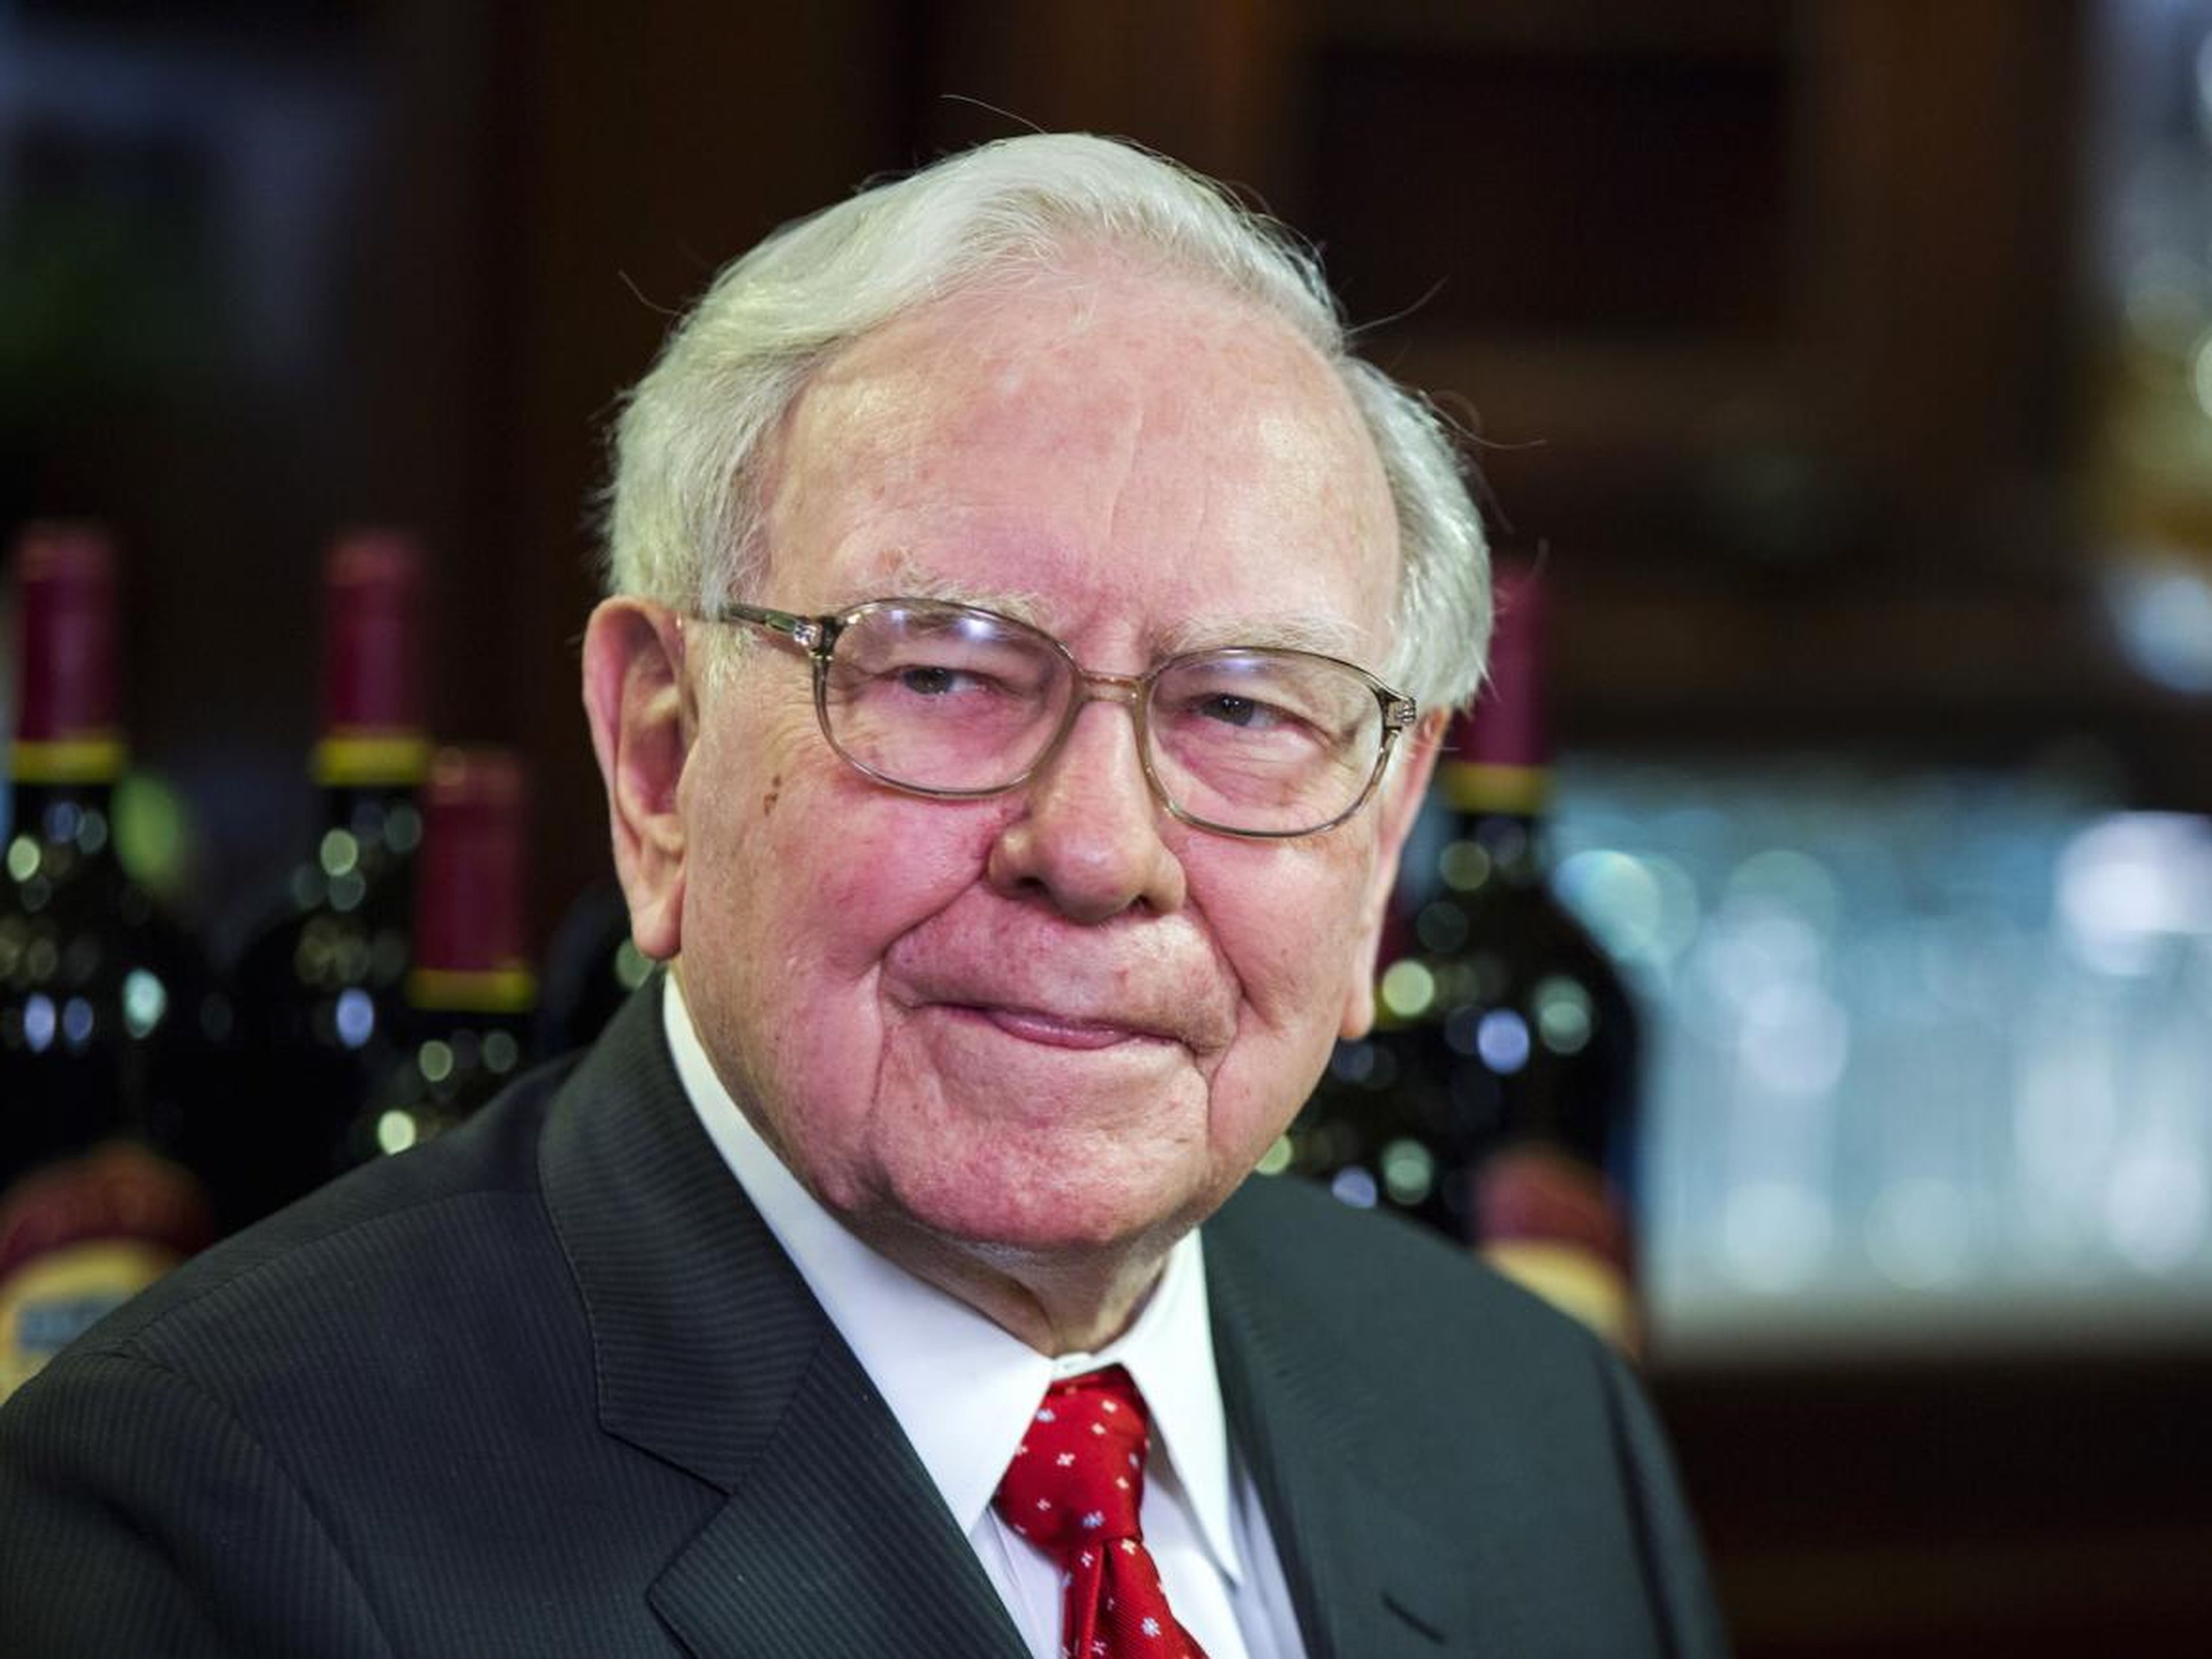 Warren Buffett, inversor, filántropo y presidente de Berkshire Hathaway.